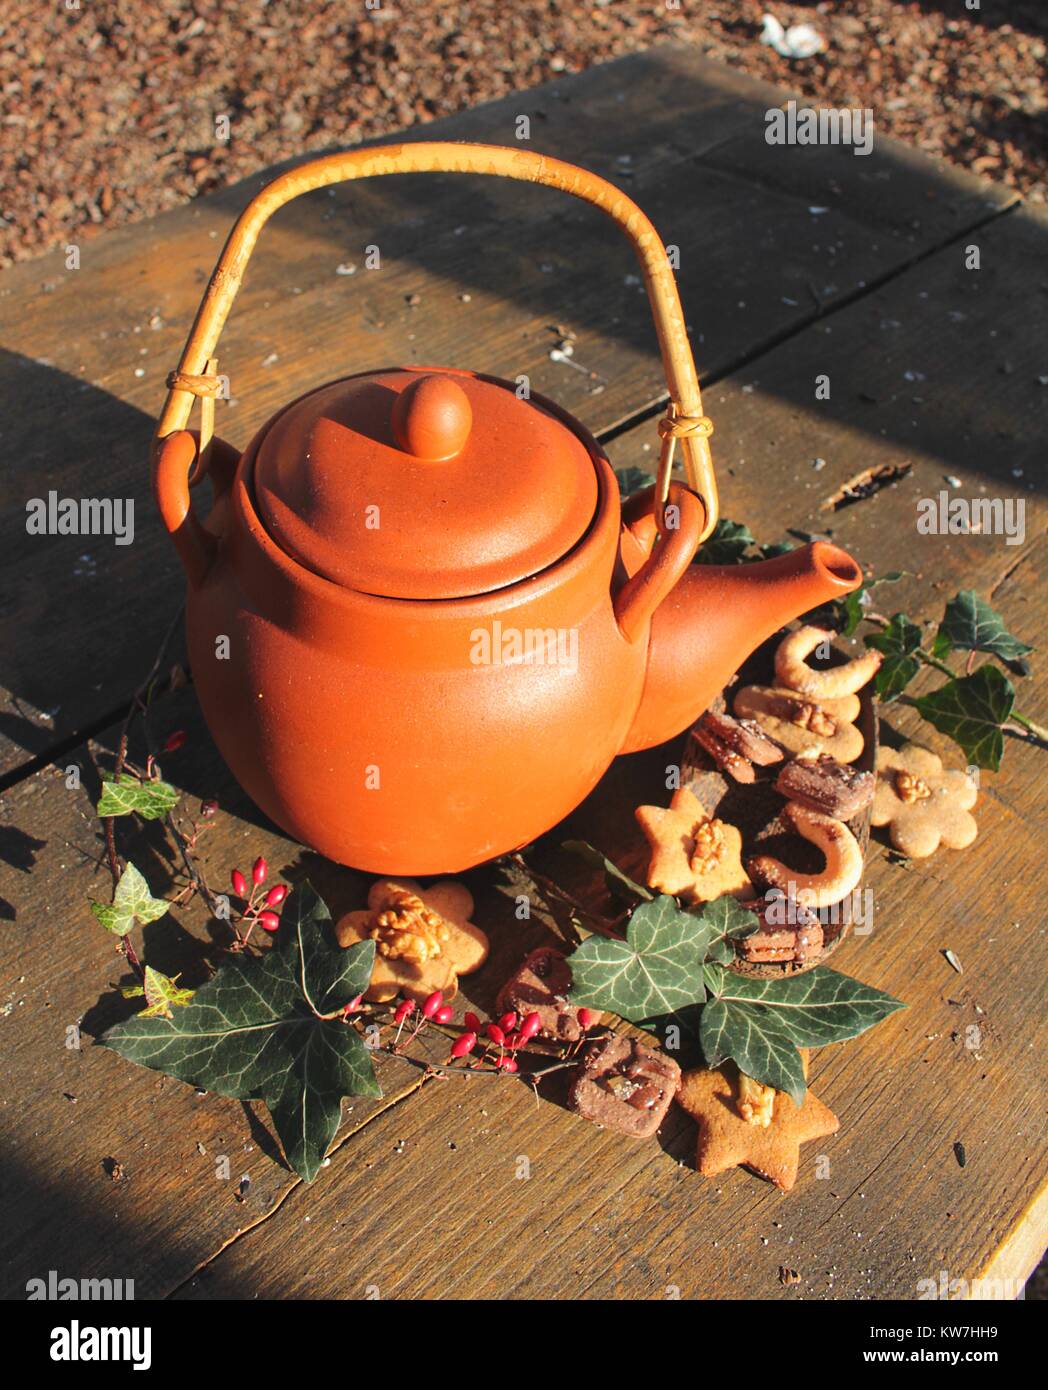 Still Life - teiera in ceramica con i dolci di Natale e foglie d'edera Foto Stock